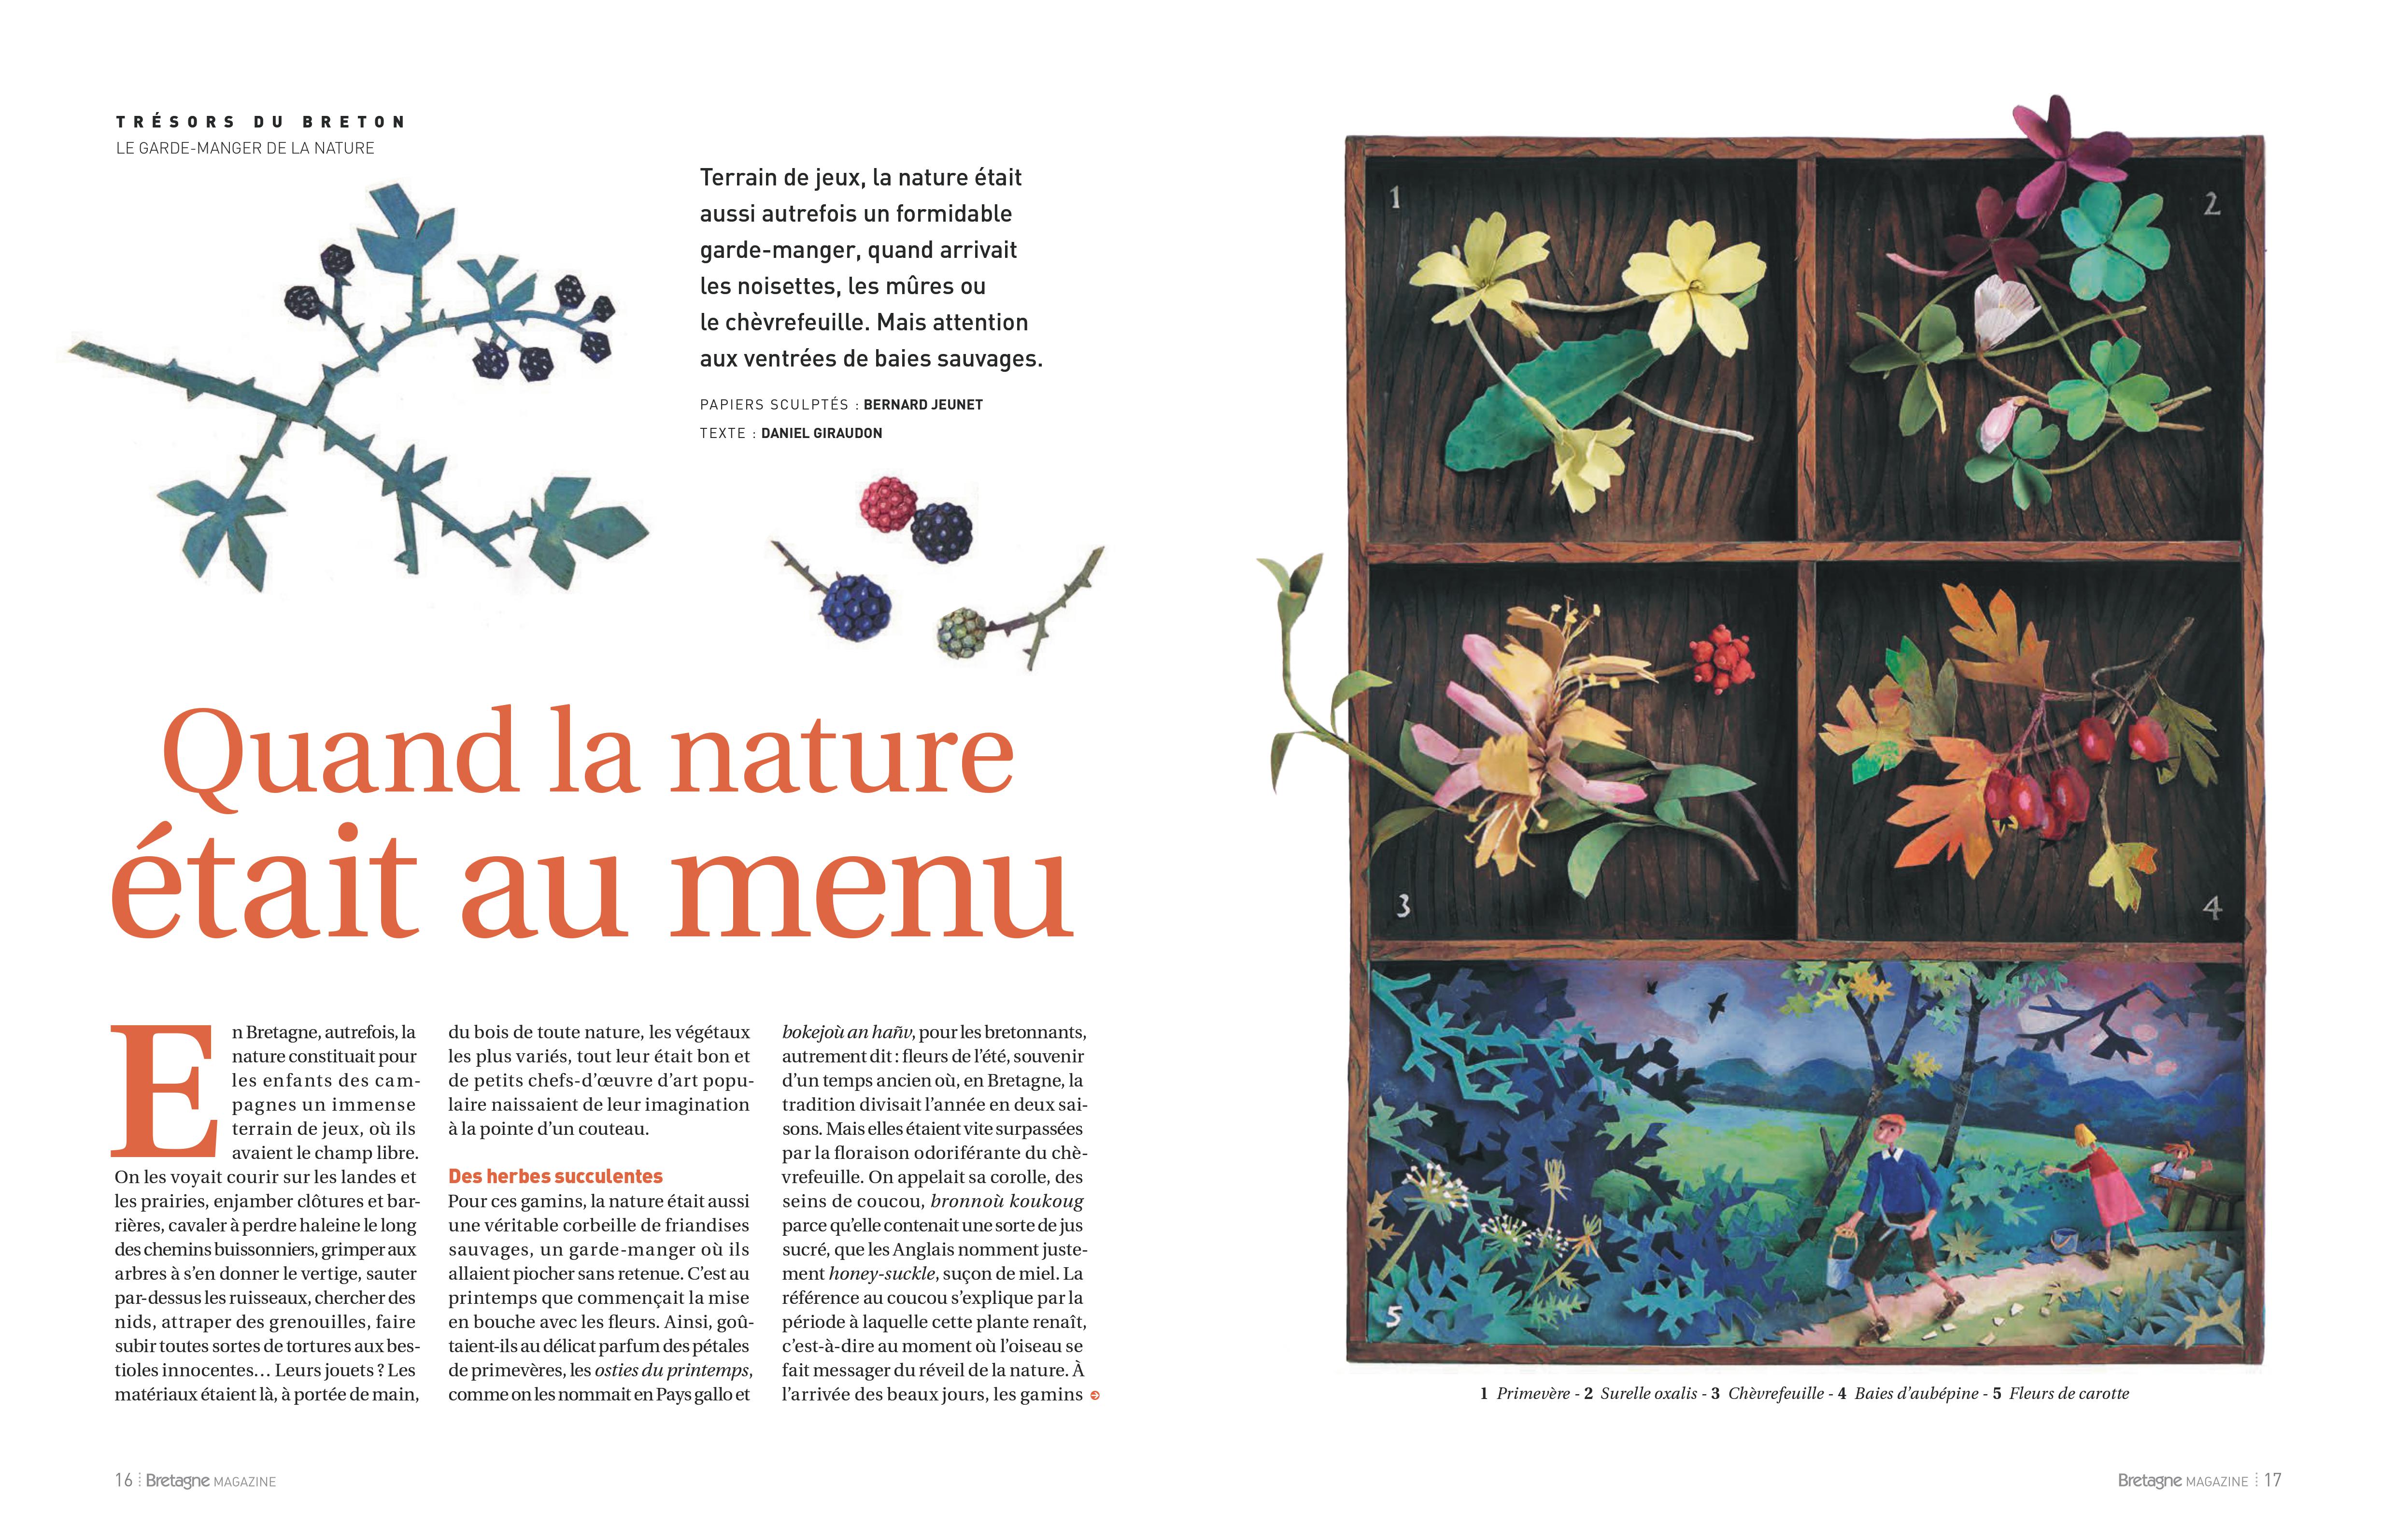 Aperçu de l'article Bretagne Magazine "Quand la nature était au menu" 